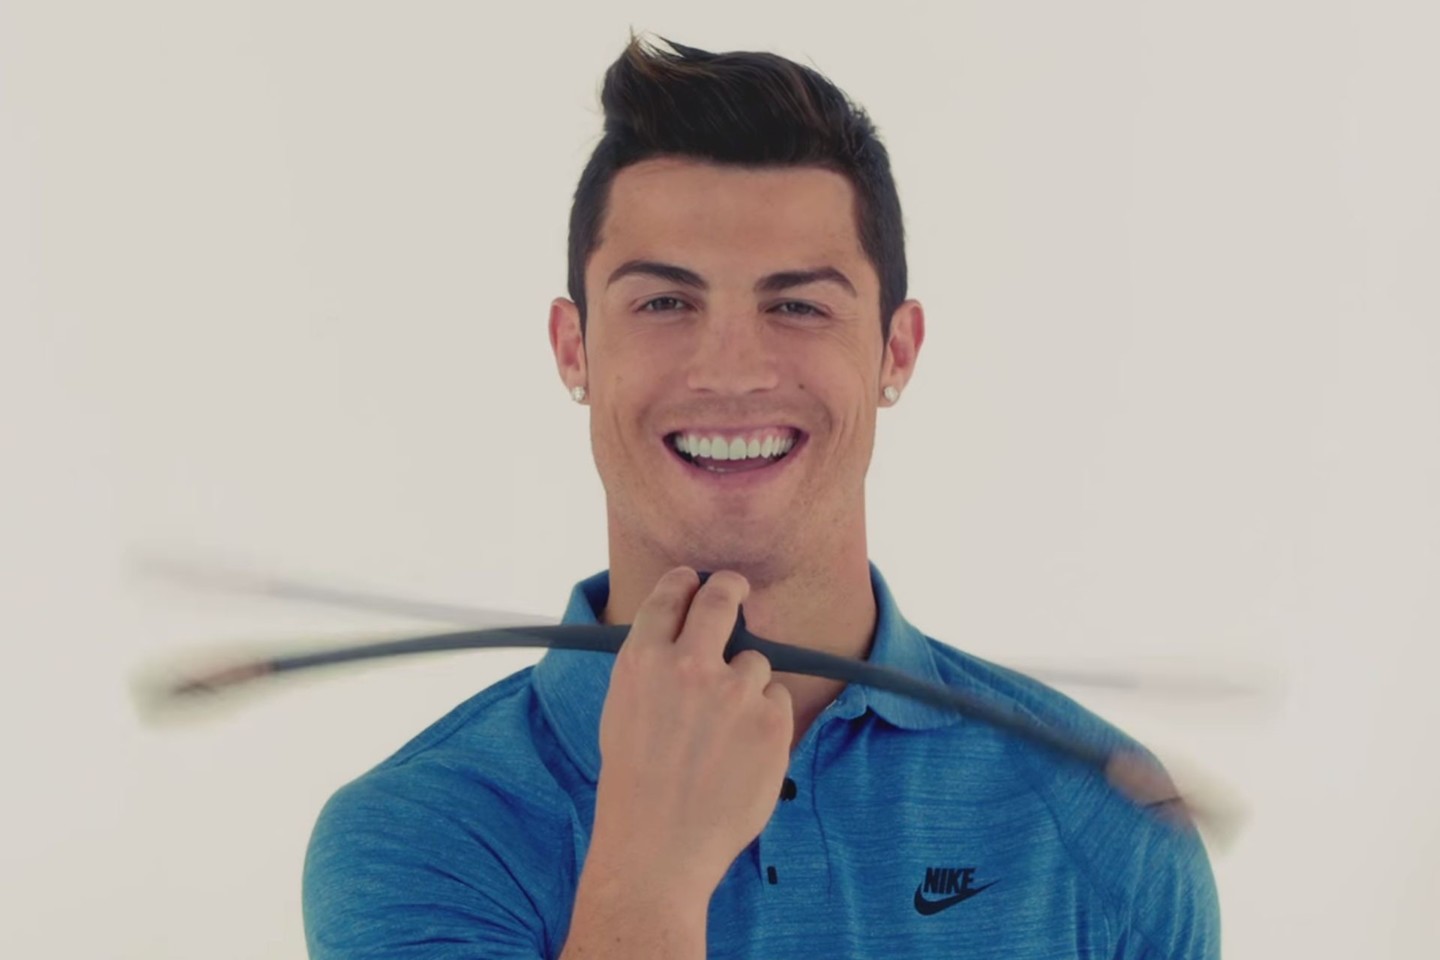 Produkto reklamose nusifilmavo garsus futbolininkas Cristiano Ronaldo, tiesa, „Facial Fitness Pao“ į burną jis taip ir neįsikišo – tik pajudino rankomis.<br>Kadras iš „YouTube“